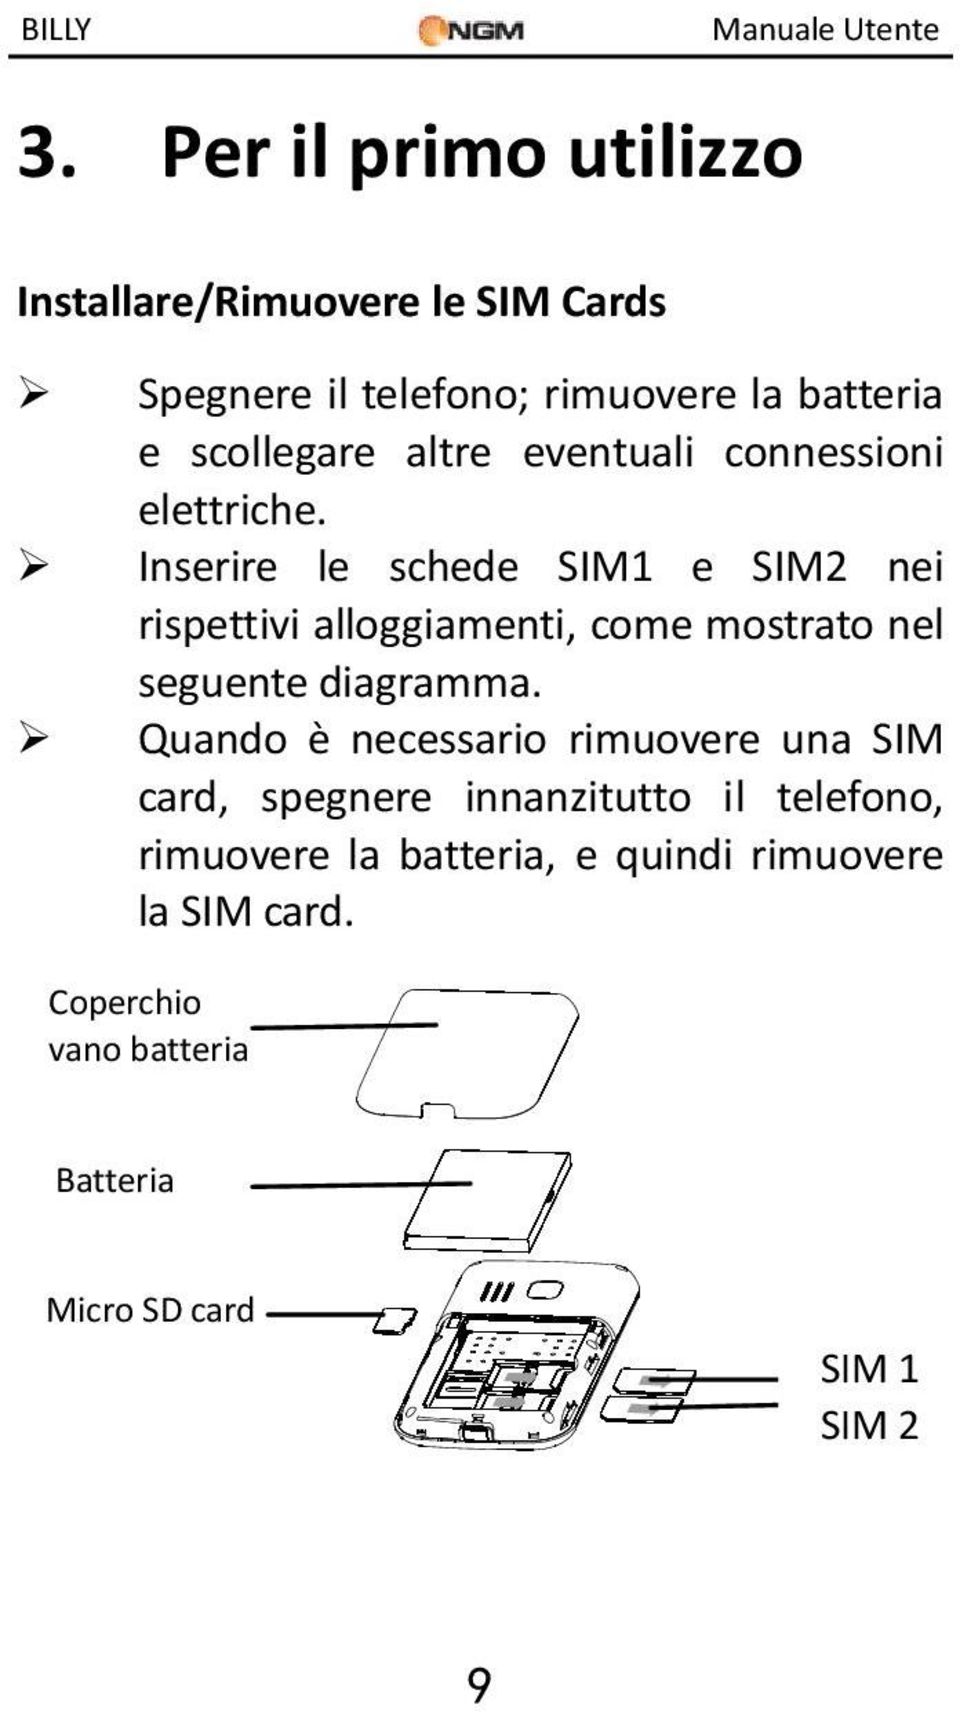 Inserire le schede SIM1 e SIM2 nei rispettivi alloggiamenti, come mostrato nel seguente diagramma.